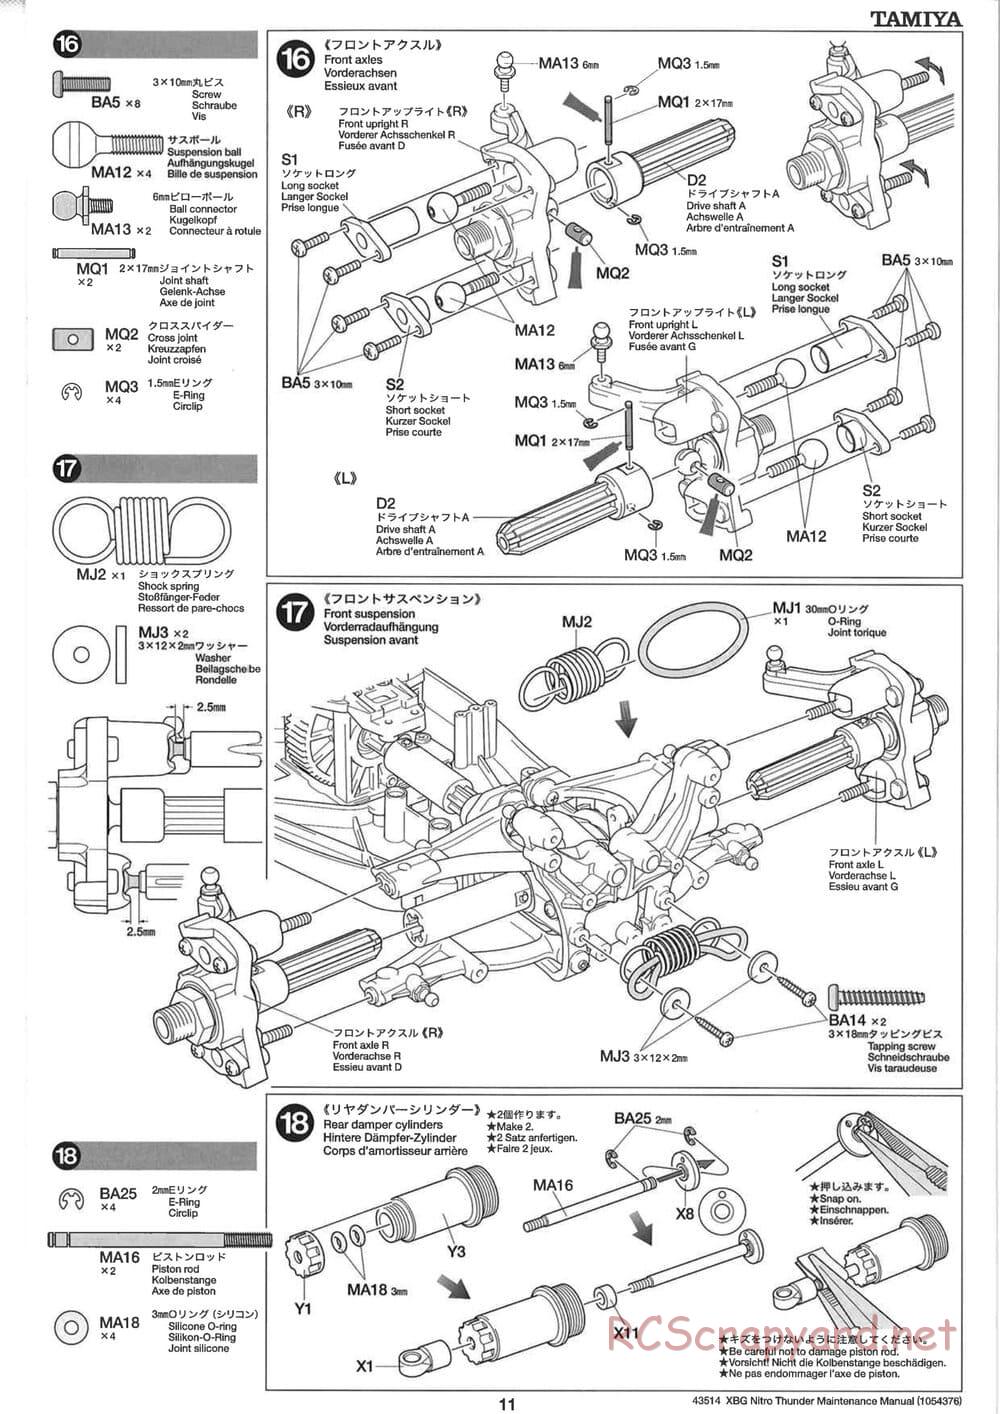 Tamiya - Nitro Thunder - NDF-01 Chassis - Manual - Page 11